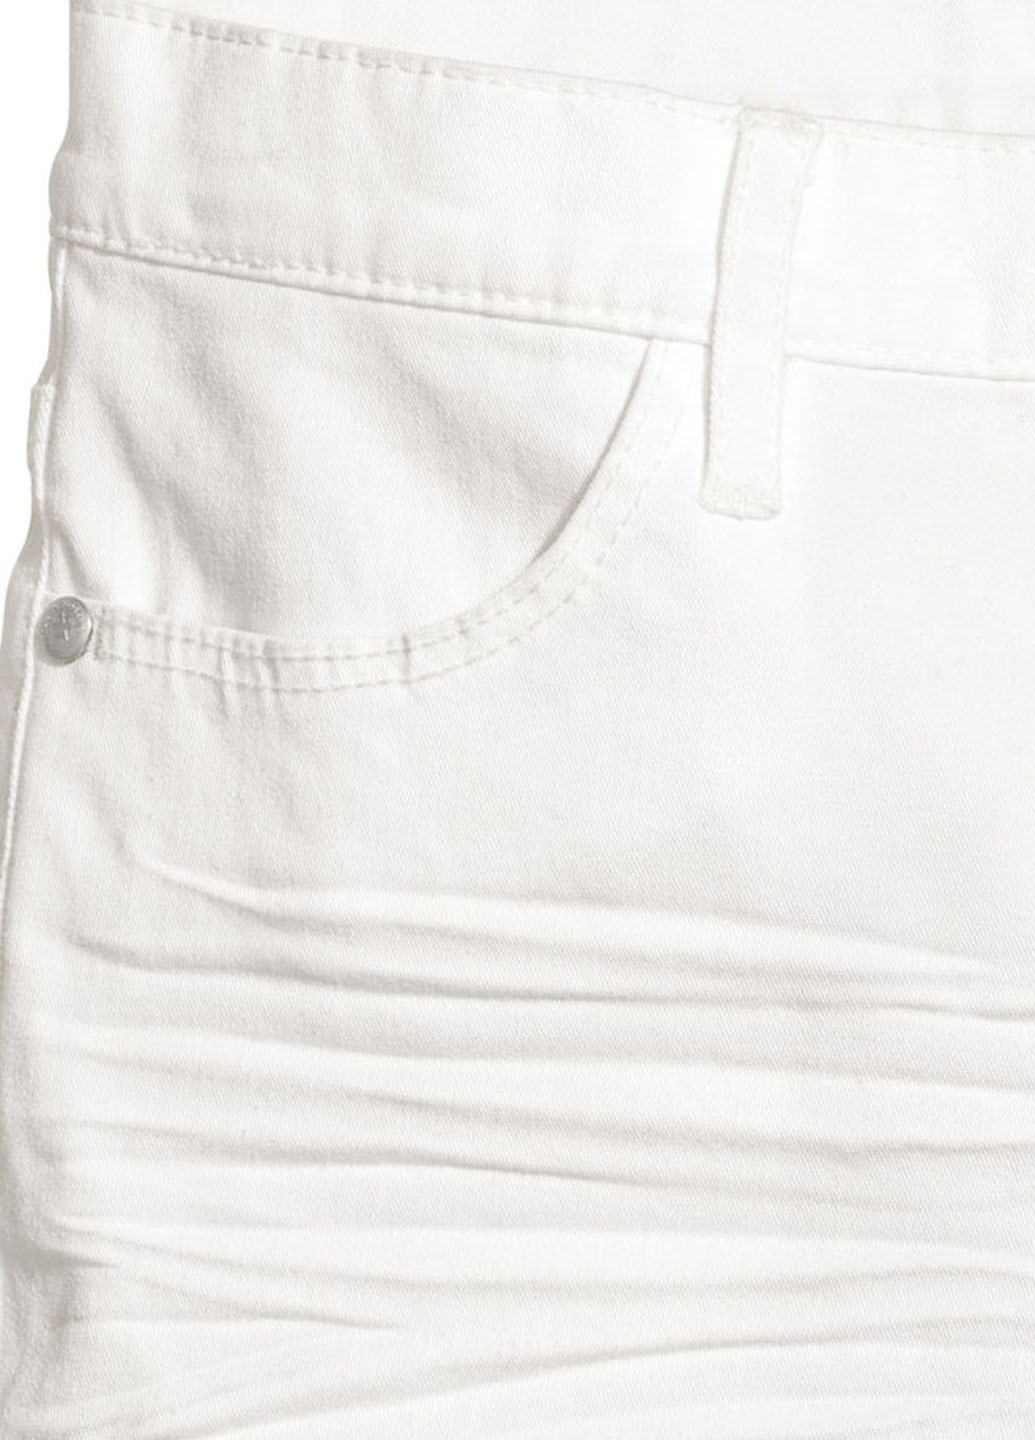 Шорты H&M средняя талия однотонные белые джинсовые